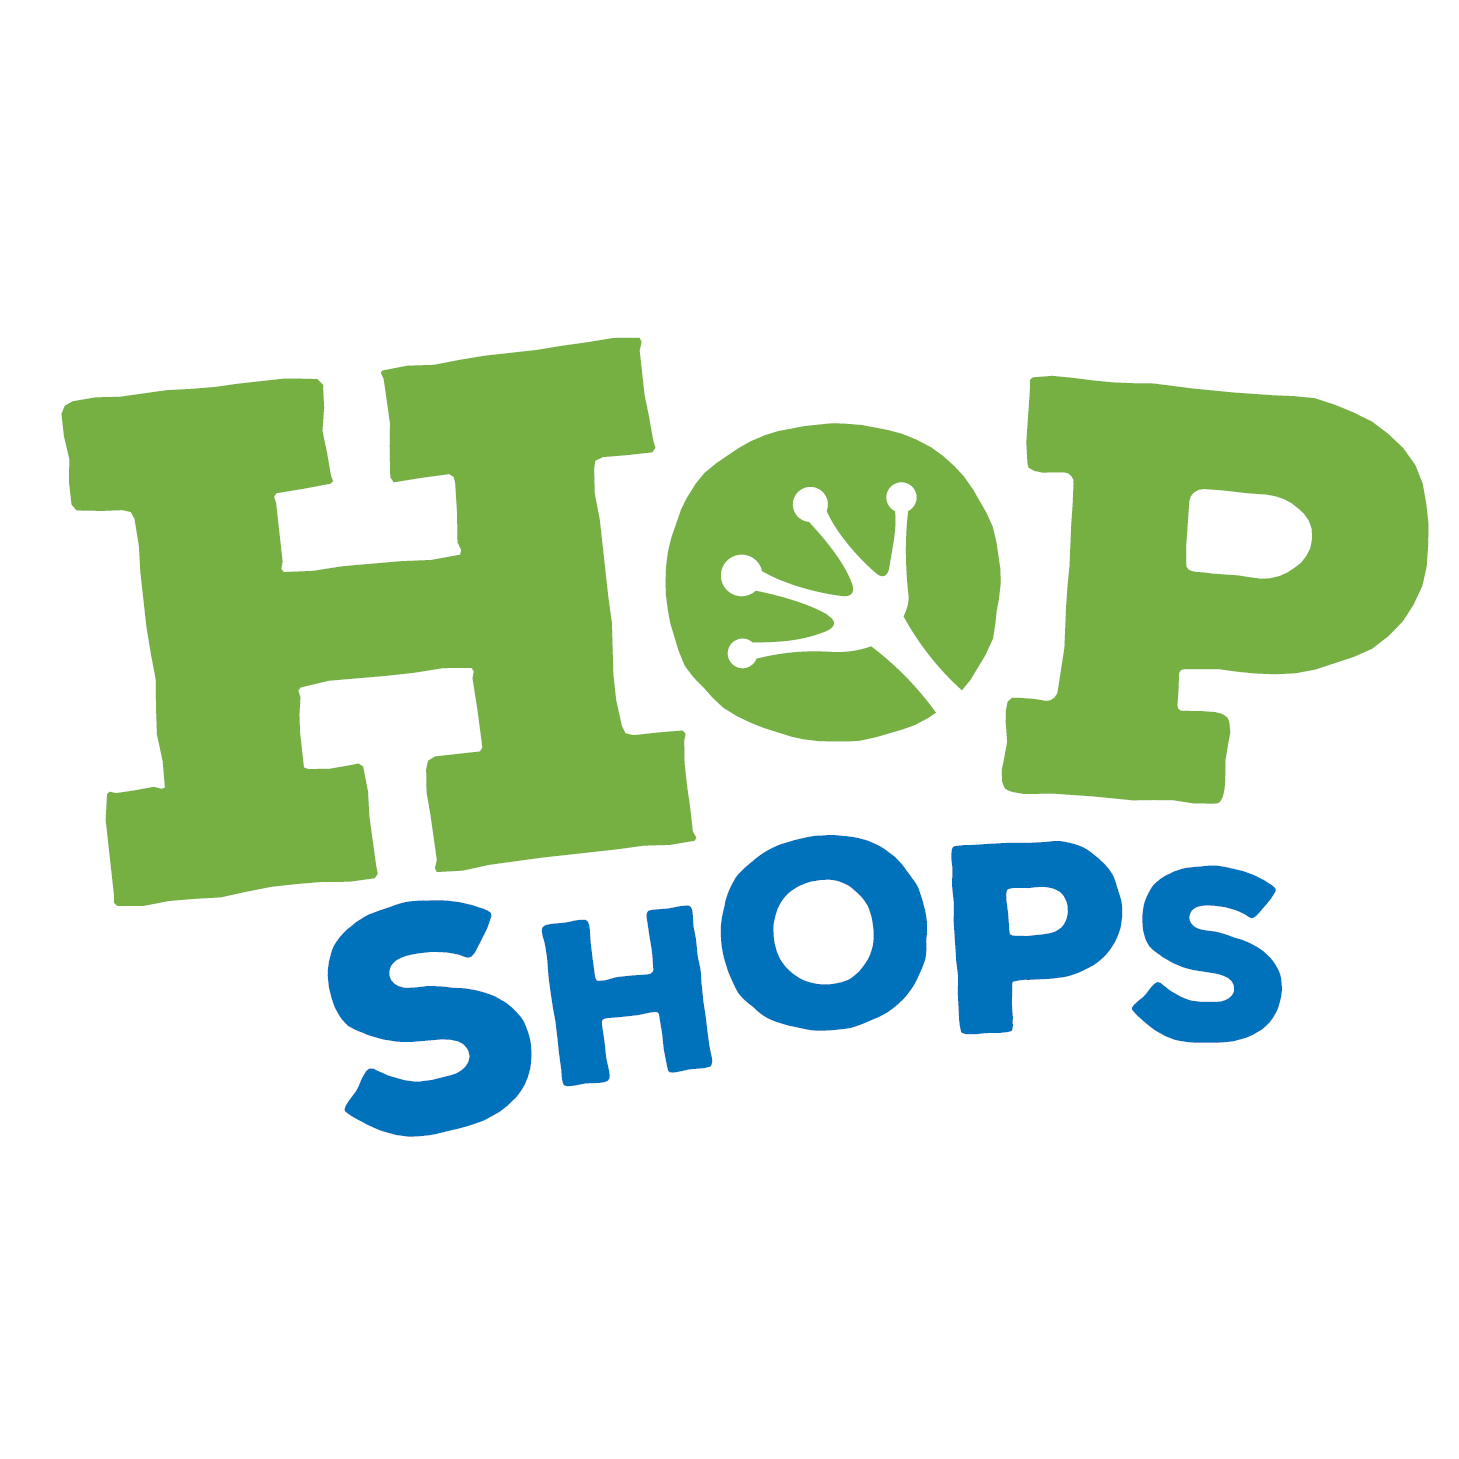 HOP Shops